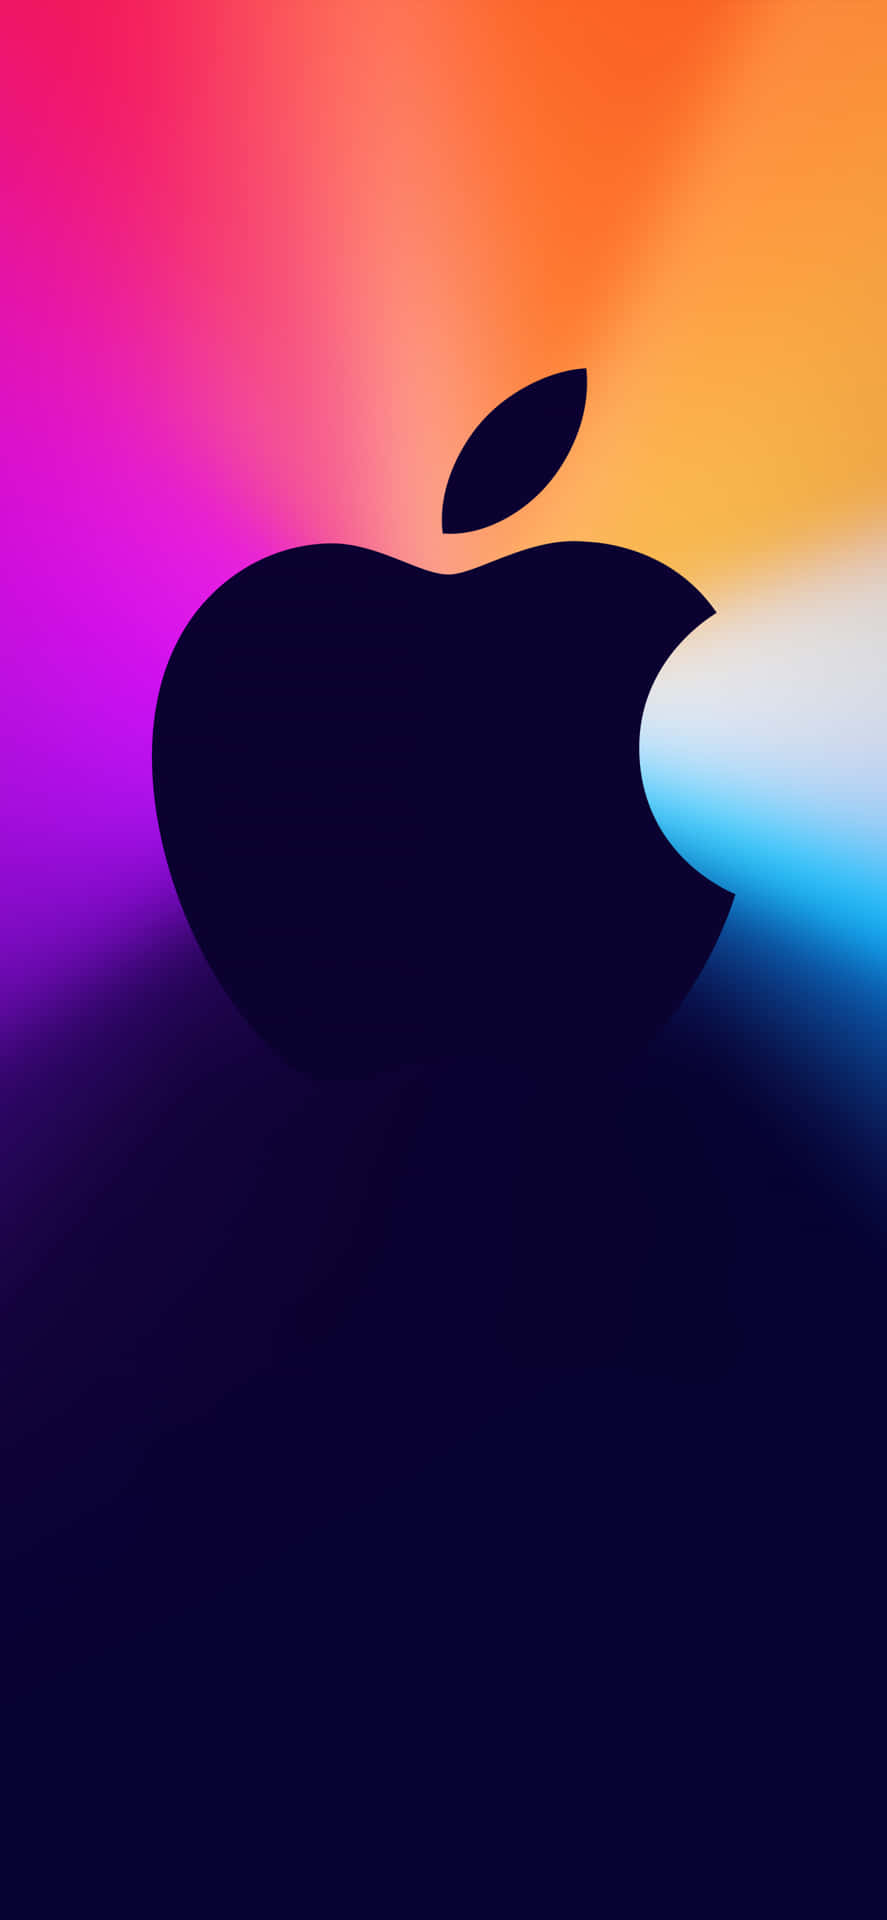 Det ikoniske Apple-logo med farverig baggrund.